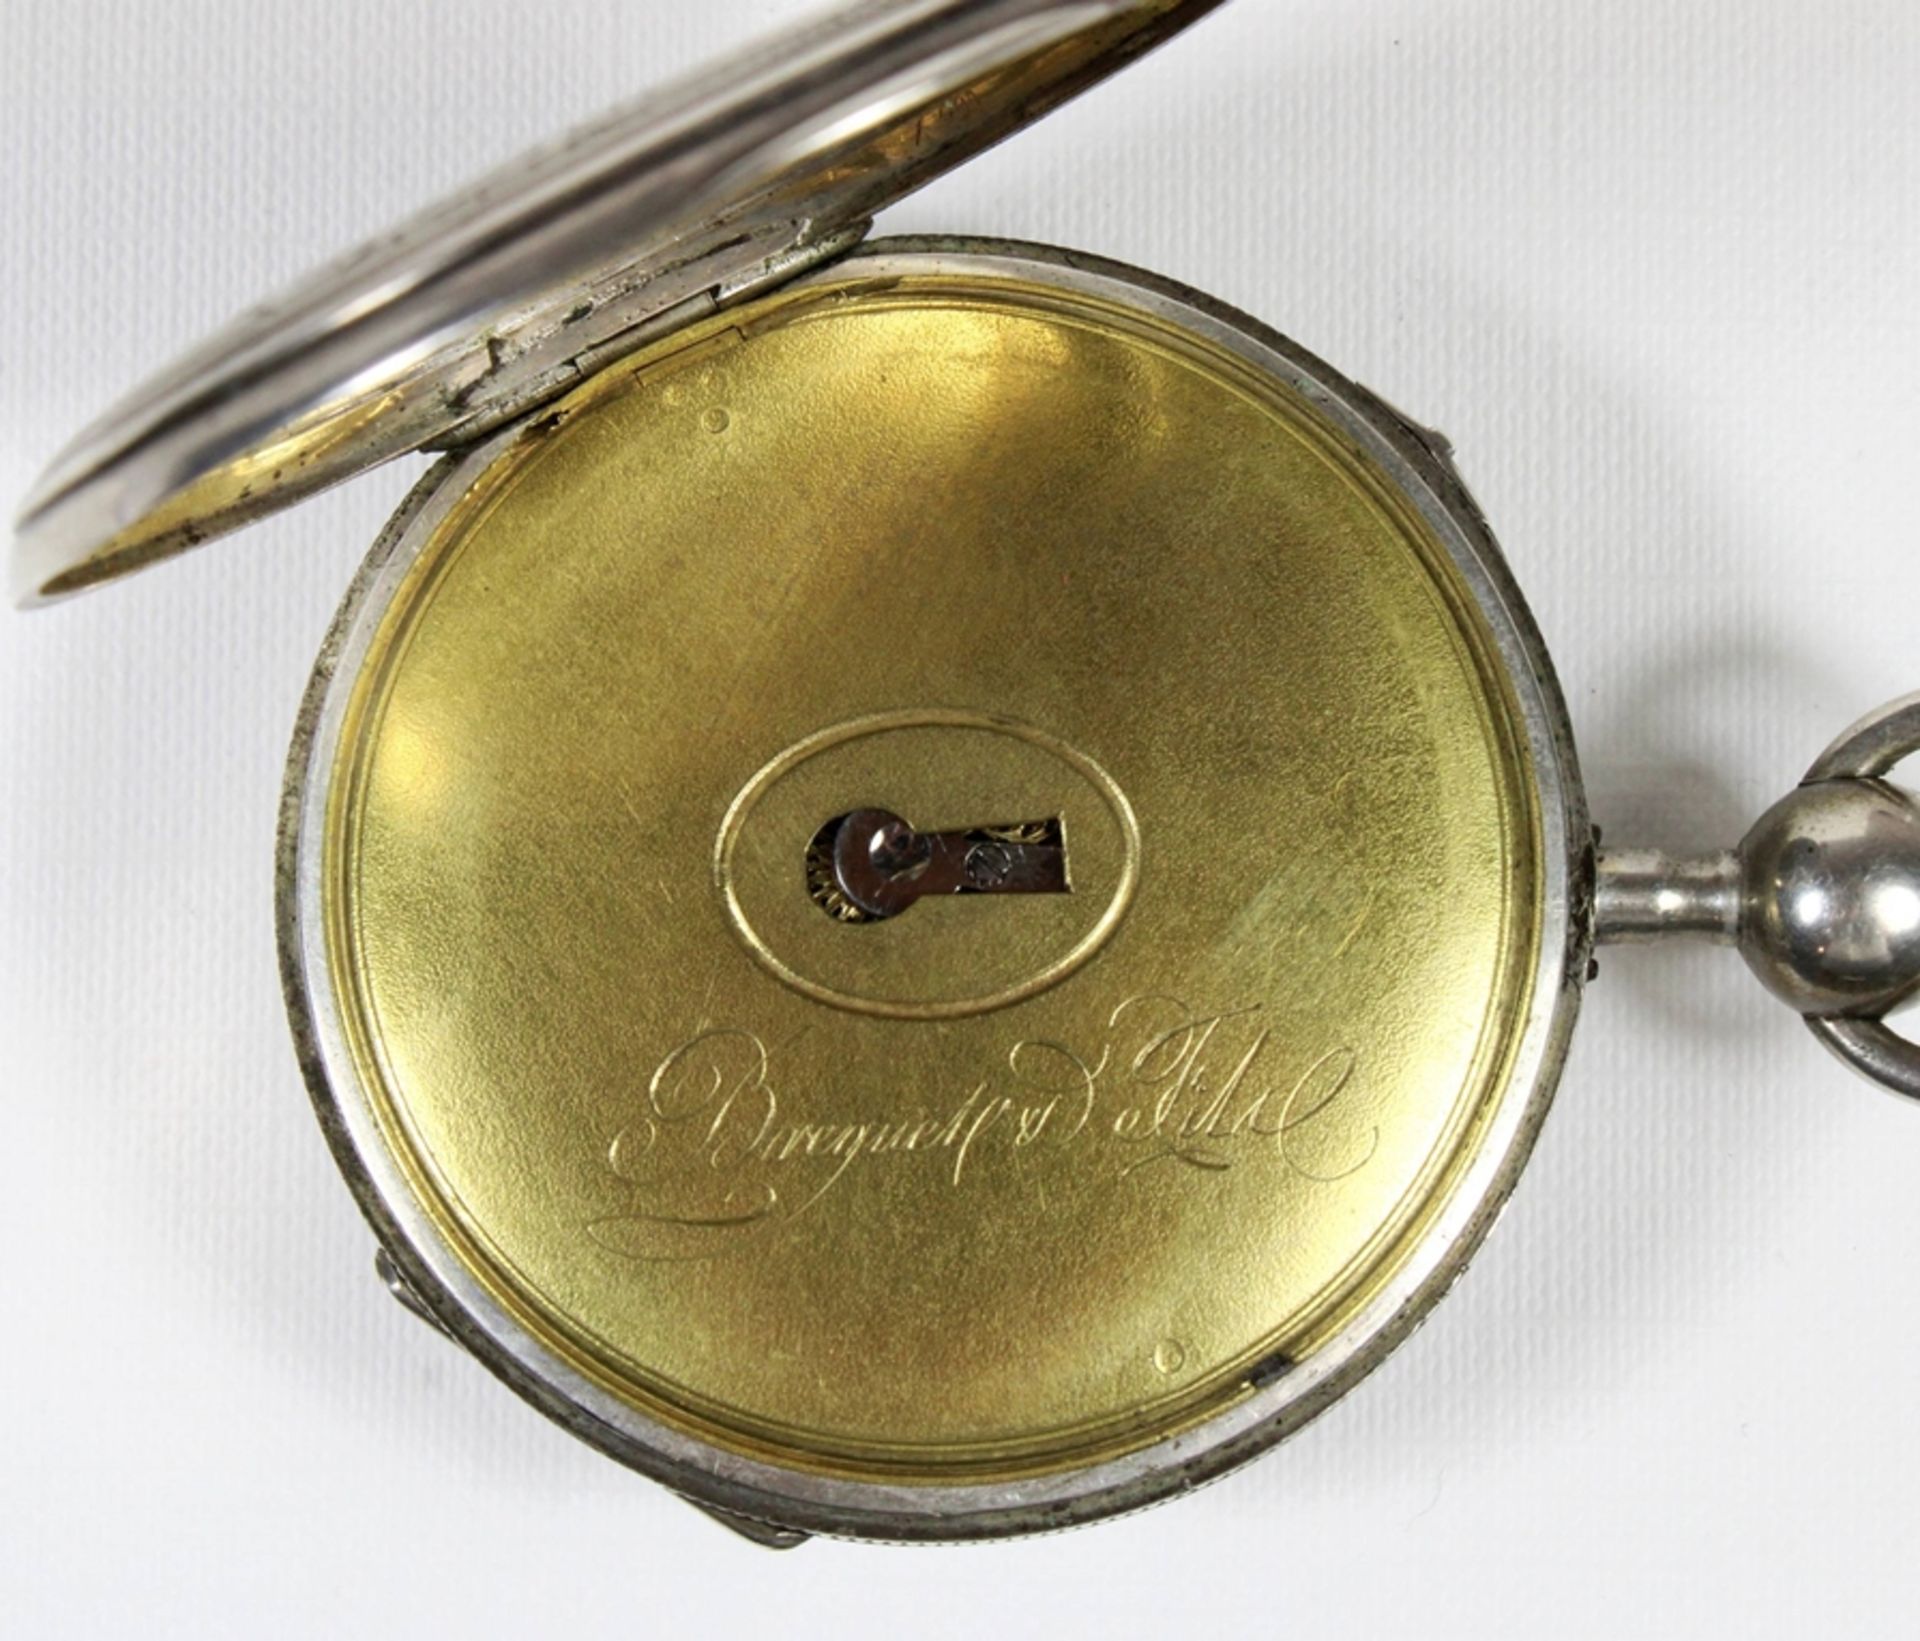 Breguet et fils Schlüsseluhr, 19. Jh., Silber, aufwendig ziseliert und verziert, Uhrwerk bez. Bregu - Image 5 of 5